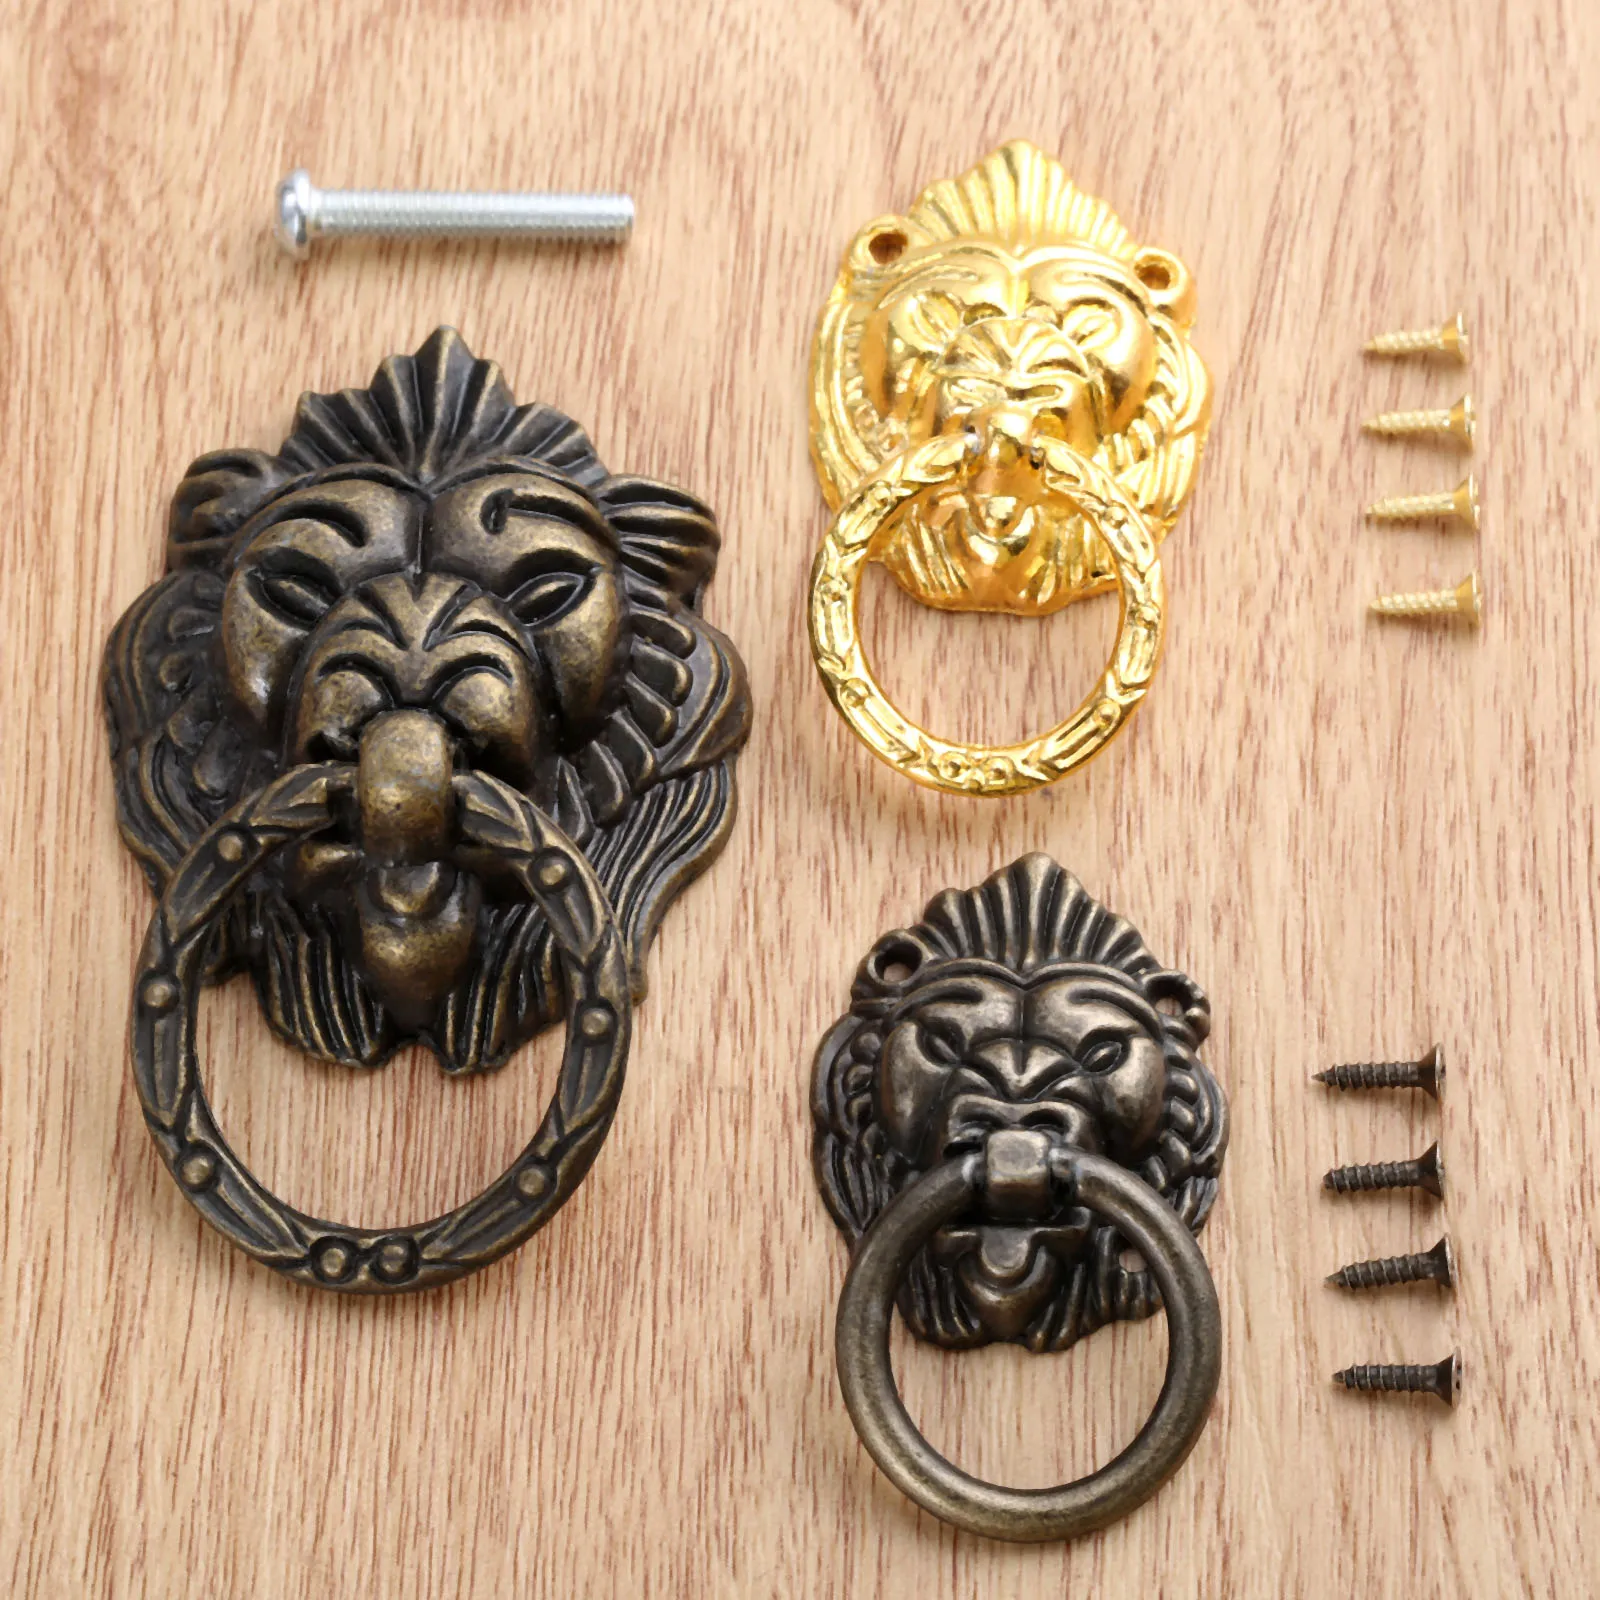 DRELD 1 шт. античная бронза/золото голова льва дверные мебельные ручки из цинкового сплава для шкафа комода выдвижные ручки мебельная фурнитура